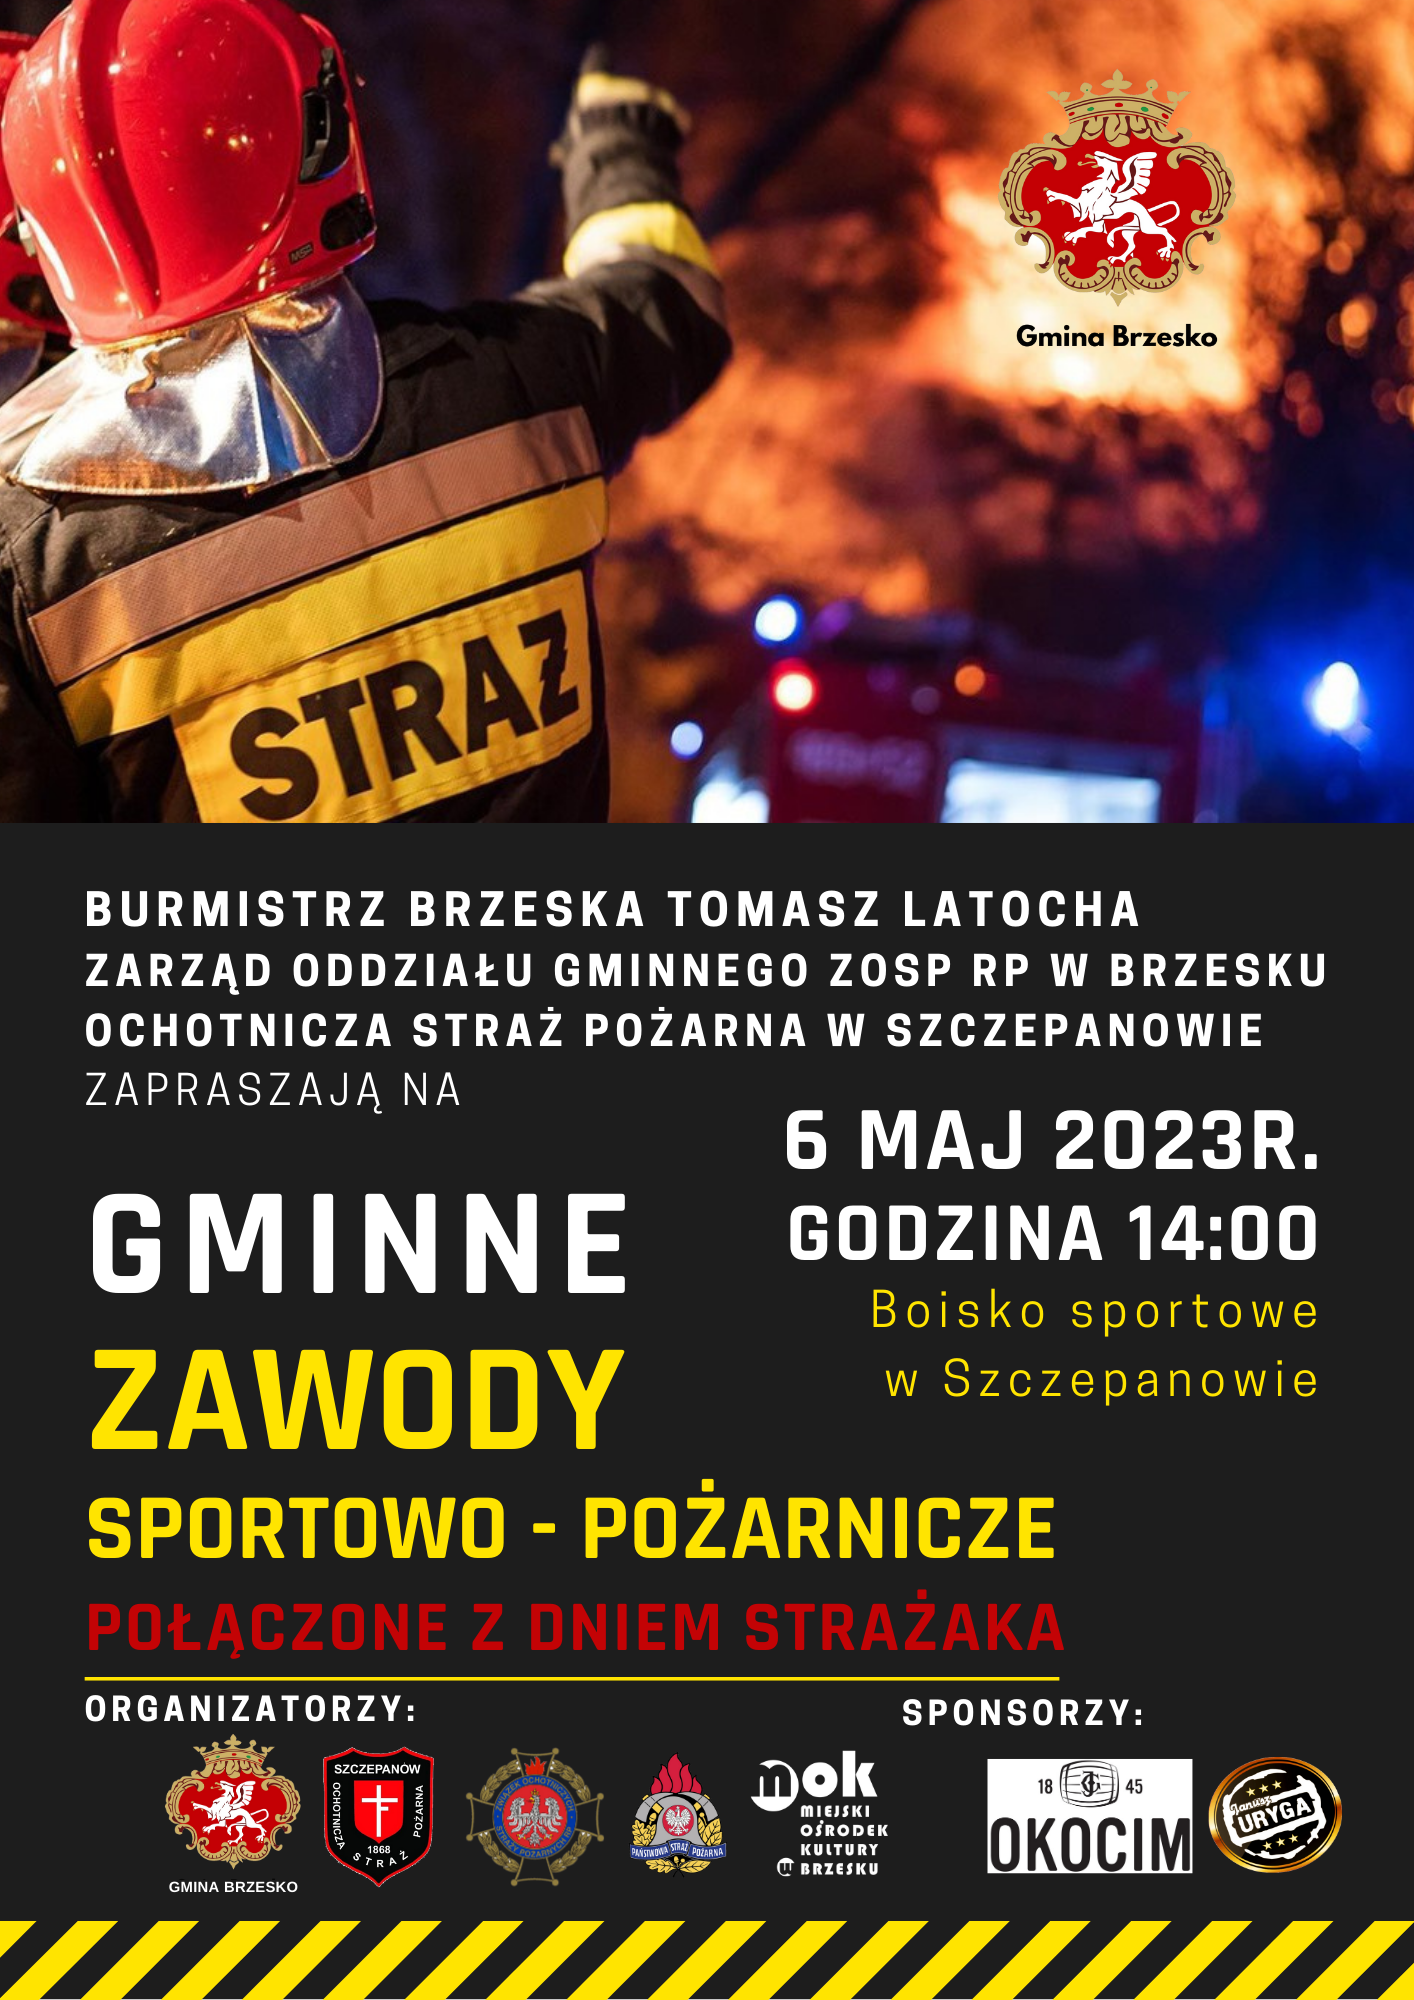 Gminne Zawody Sportowo-Pożarnicze w Szczepanowie – 6 maja 2023